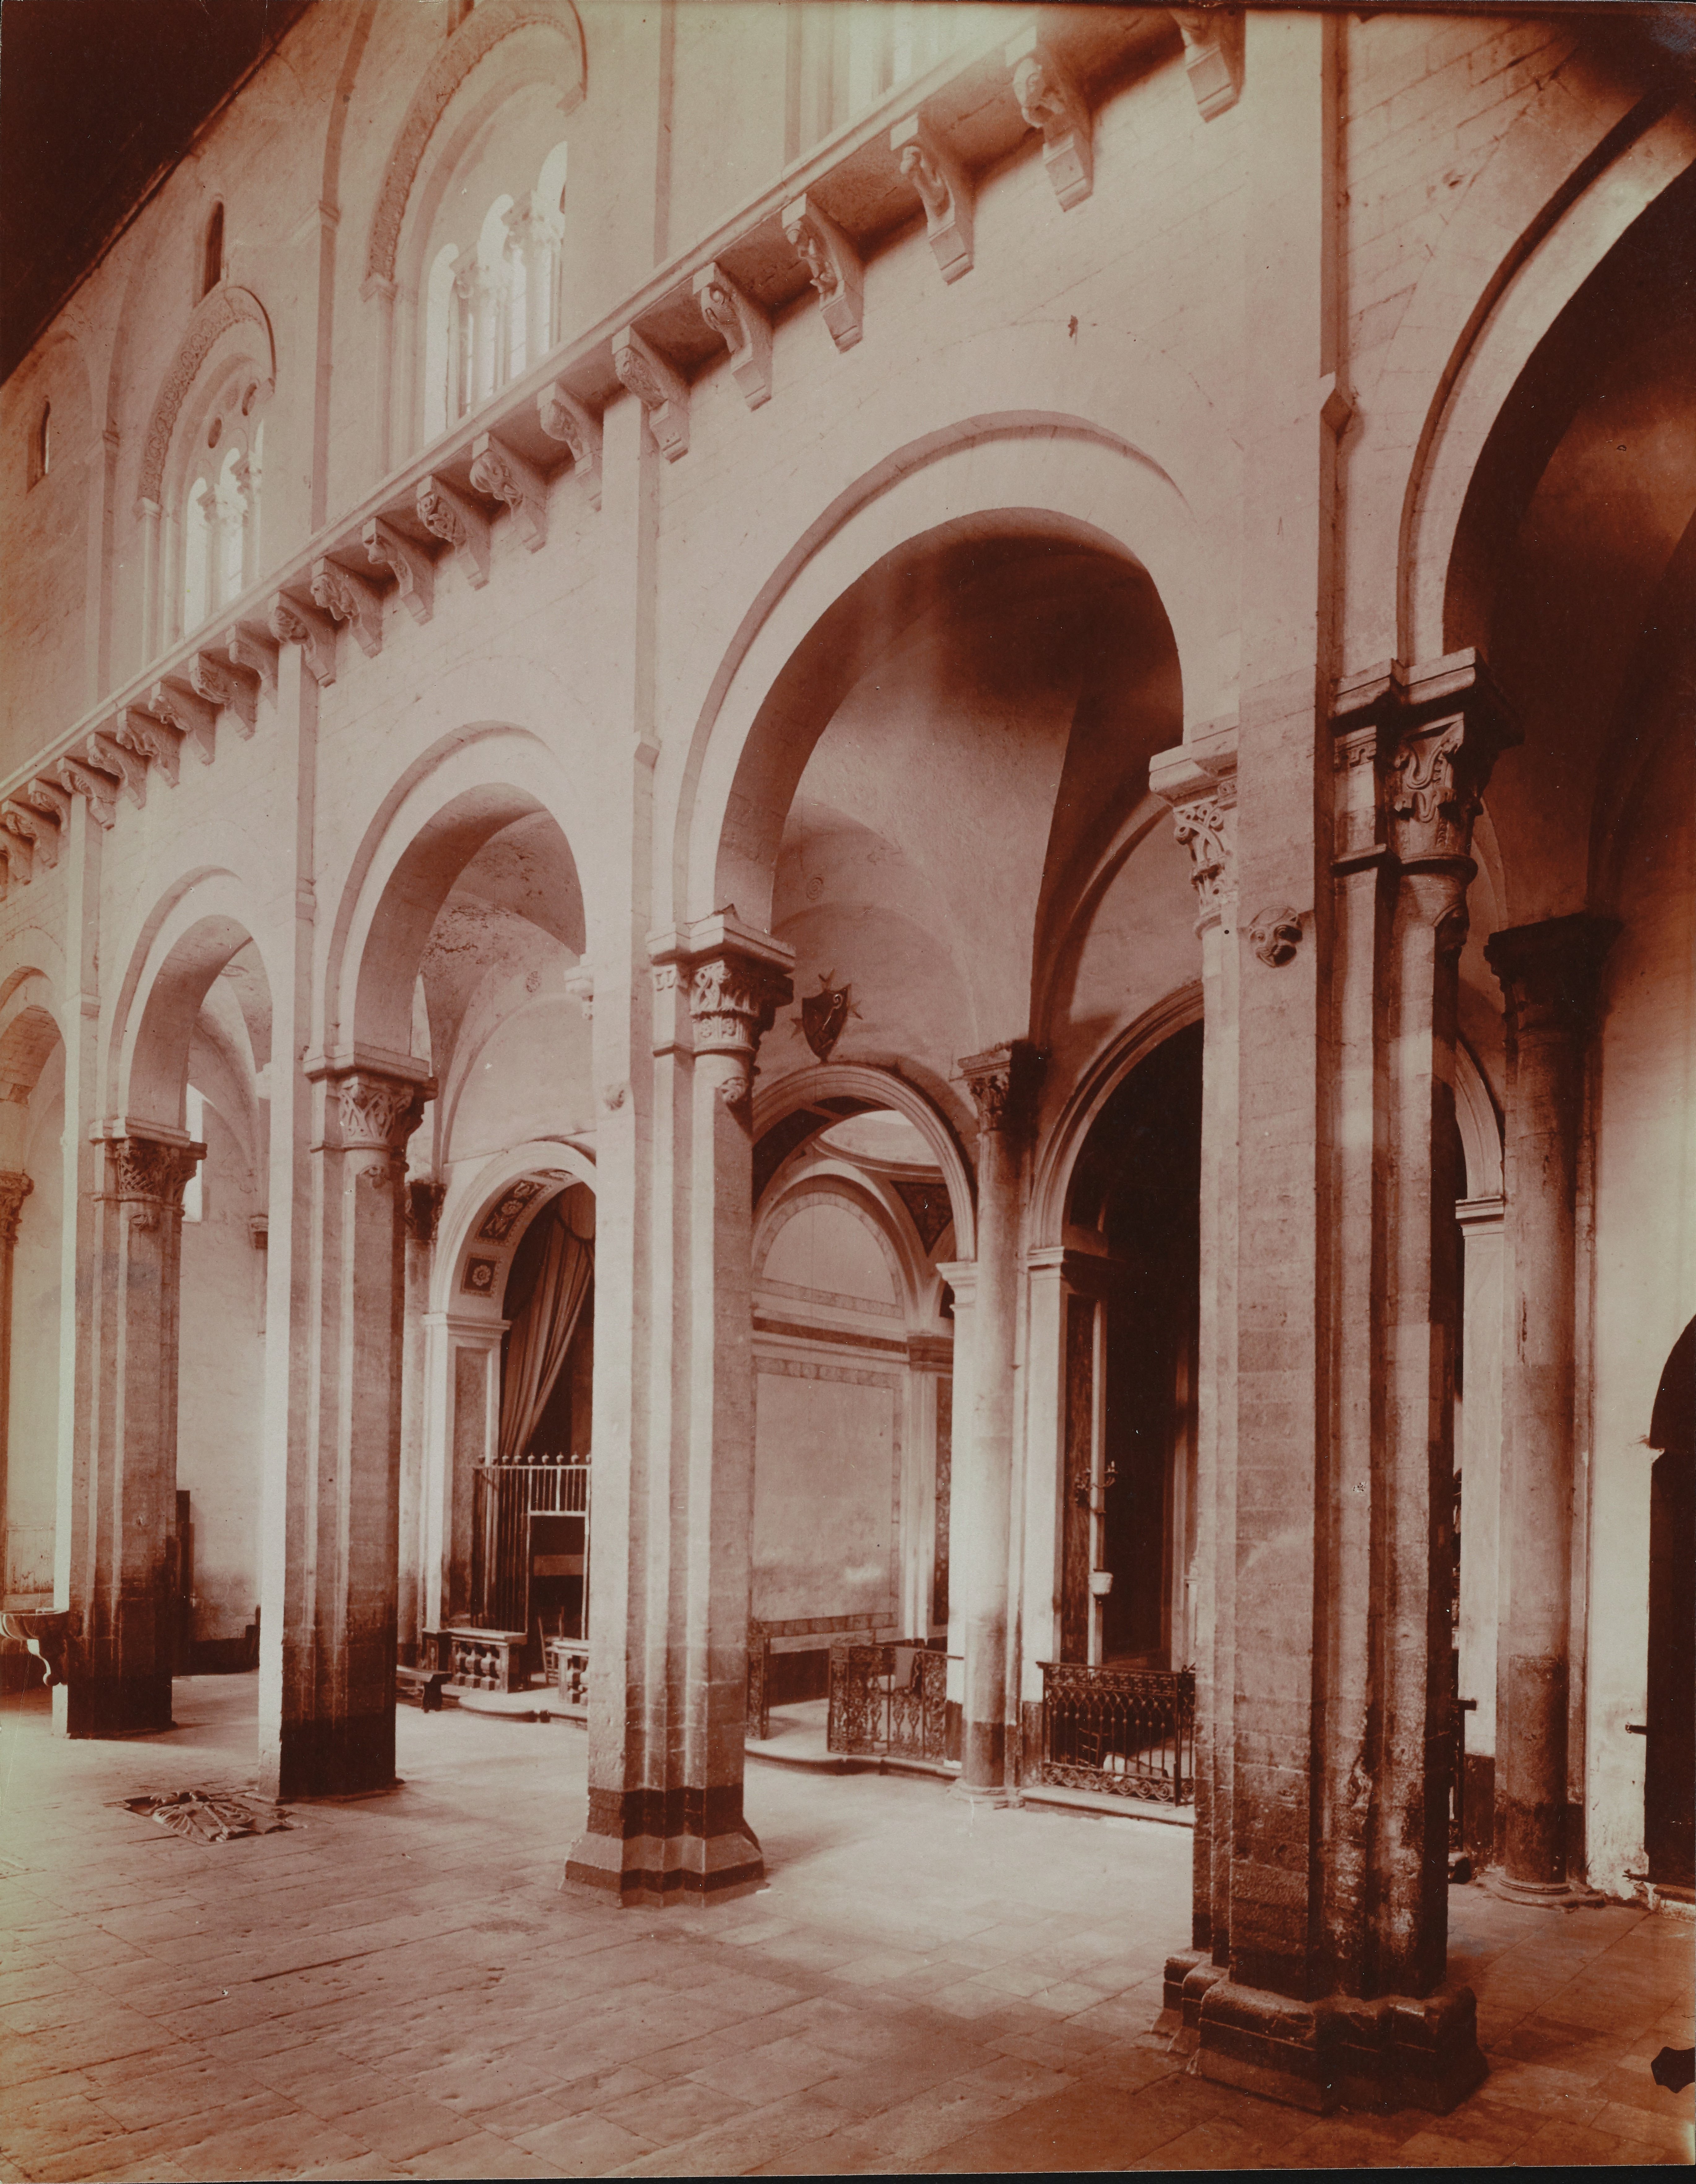 Fotografo non identificato, Ruvo di Puglia - Cattedrale S. Maria Assunta, interno, la navata, 1901-1910, albumina, MPI6091667